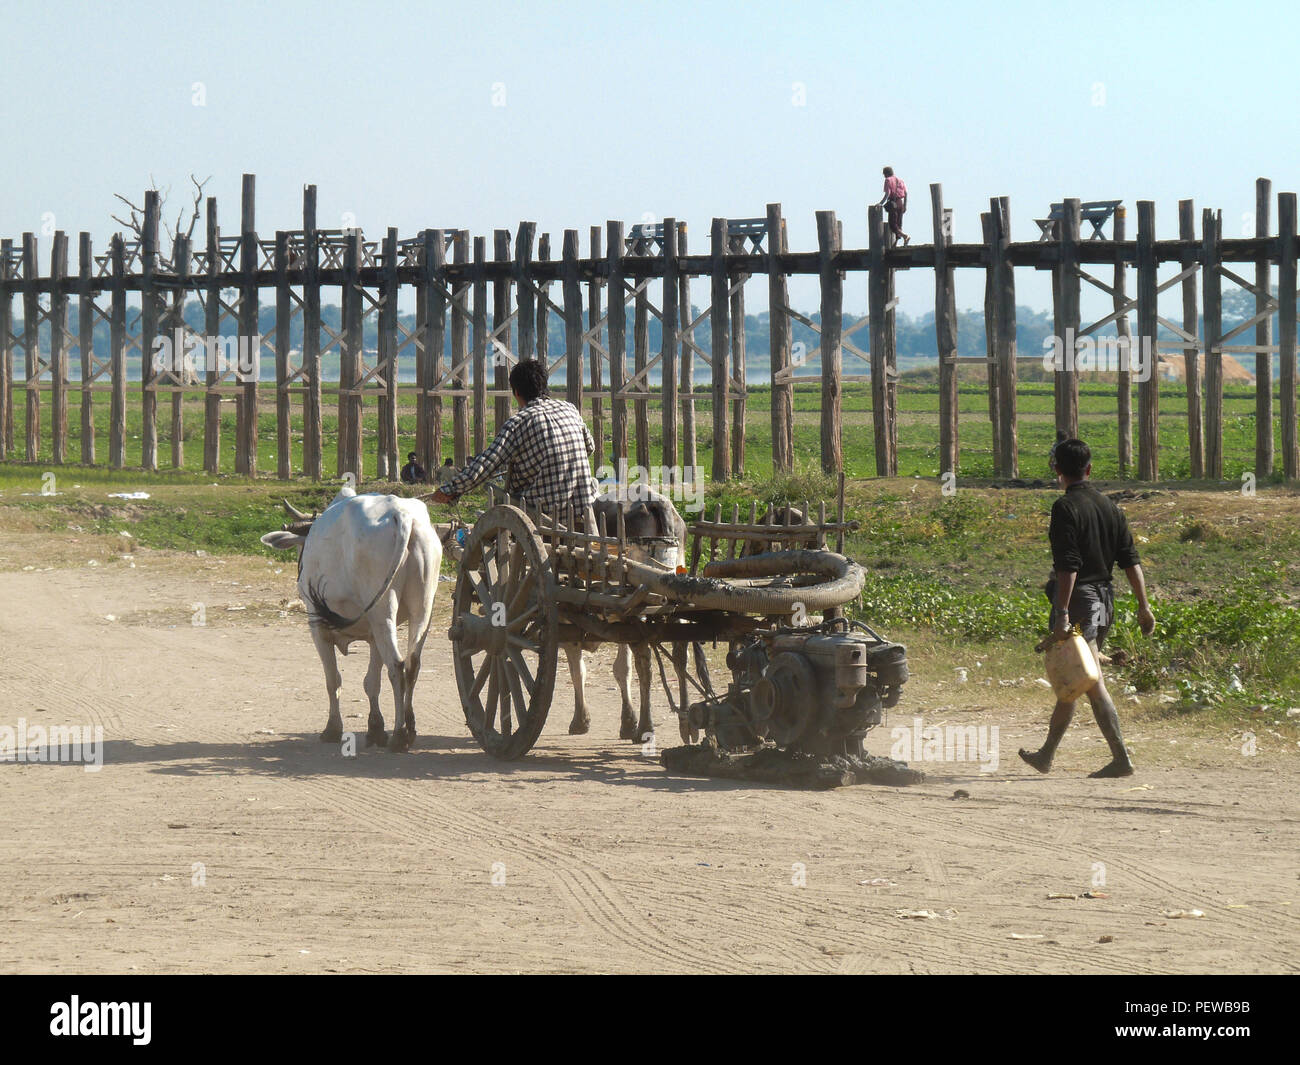 Querformat des U-Bein Brücke in Amarapura, Myanmar, mit Einheimischen auf einem alten Ochsenkarren im Vordergrund. Stockfoto